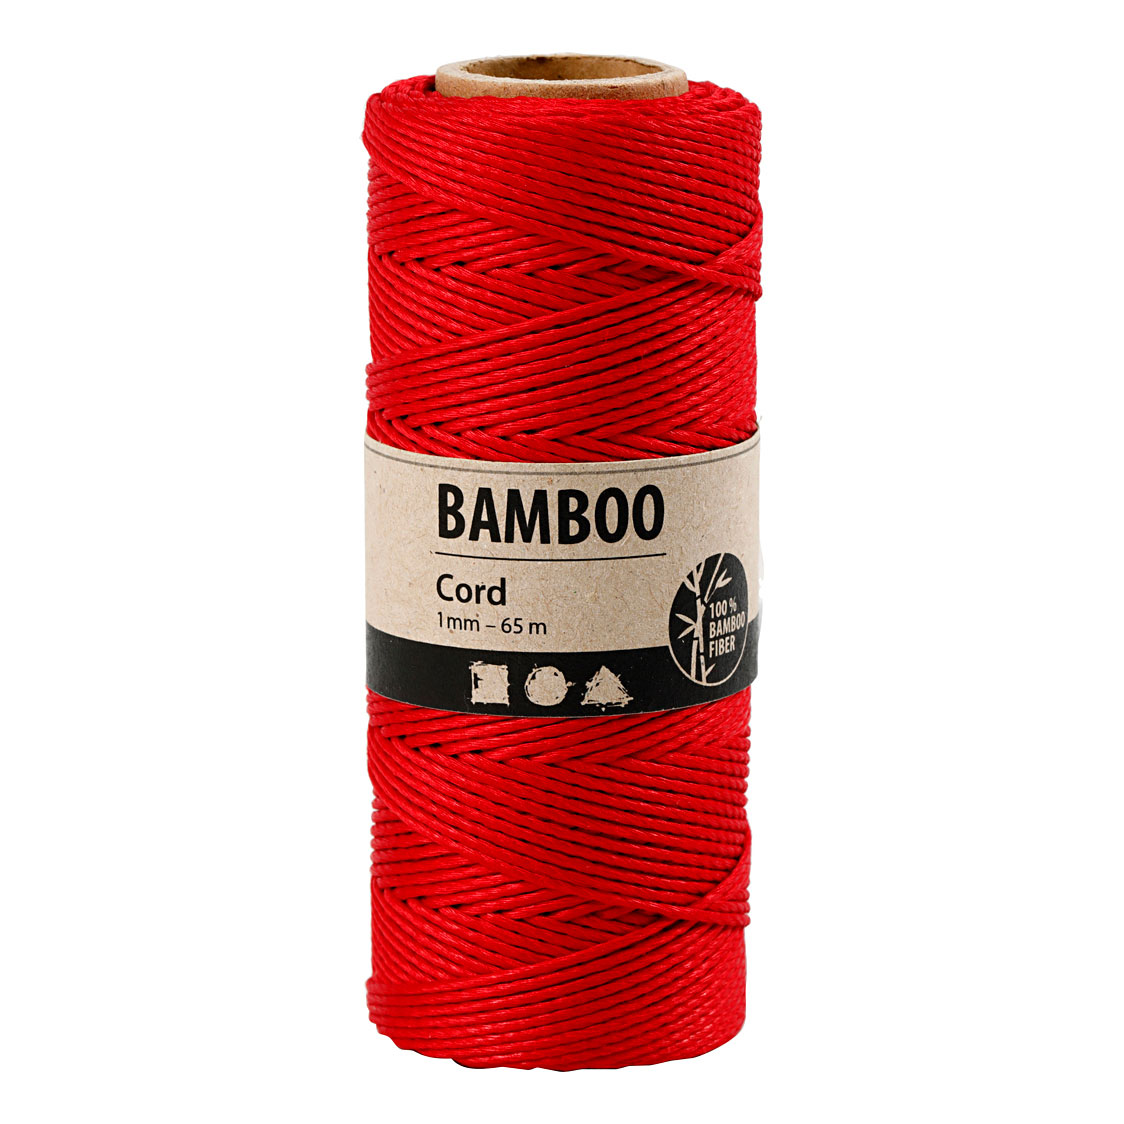 Bambusschnur Rot, 65m